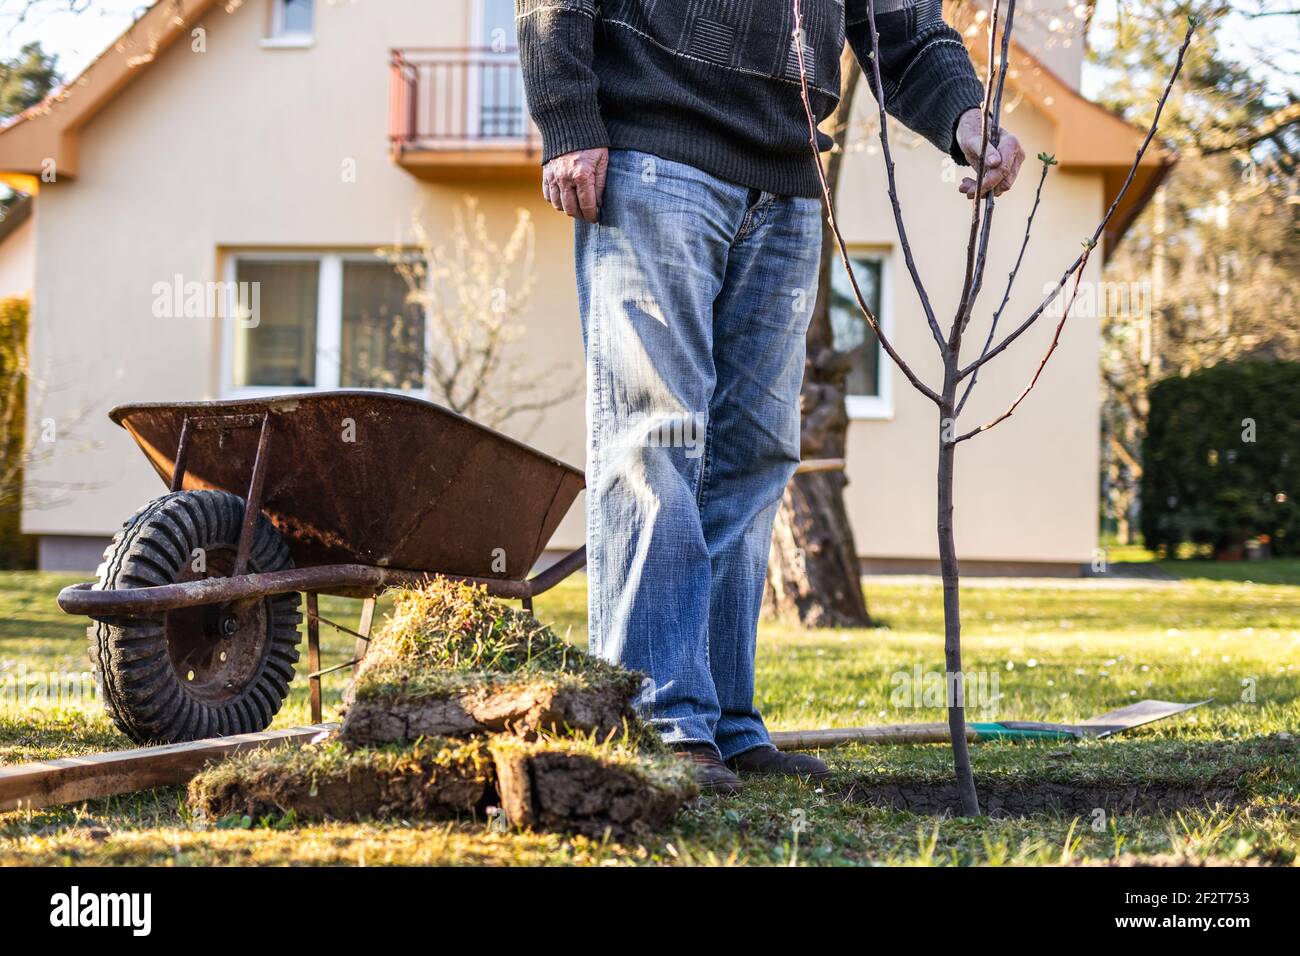 Gärtner Pflanzen Baum. Älterer Mann, der in seinem Hinterhof arbeitet. Gartenarbeit im Frühjahr Stockfoto